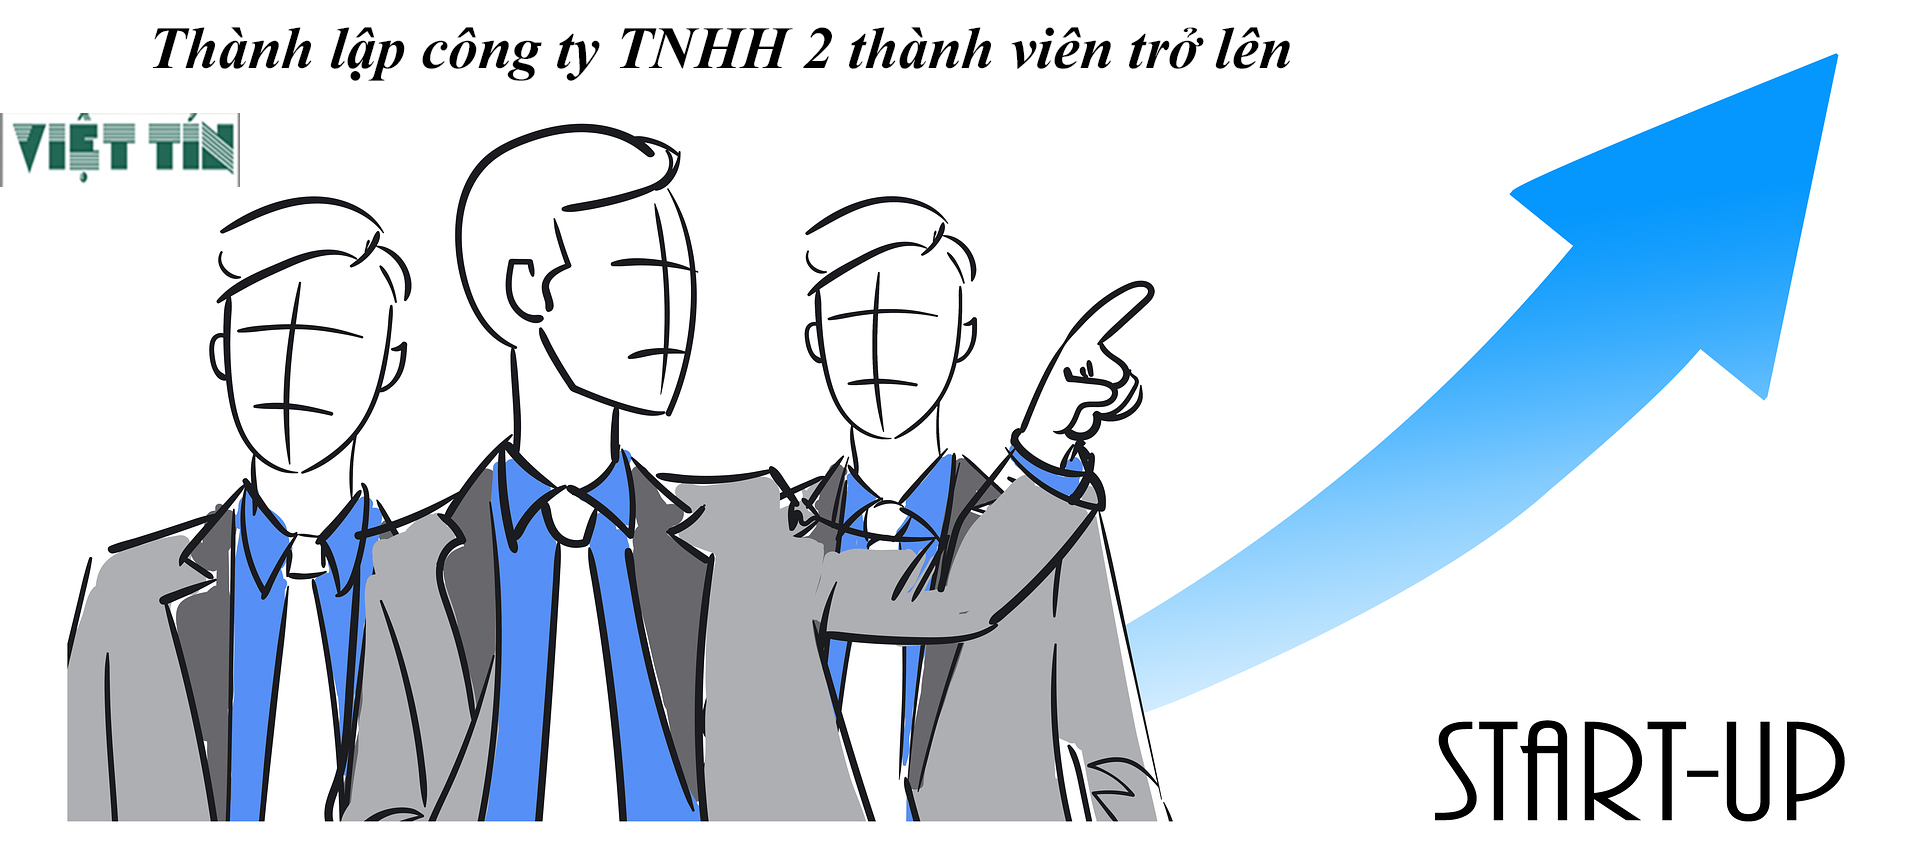 Thành lập công ty TNHH 2 thành viên trở lên